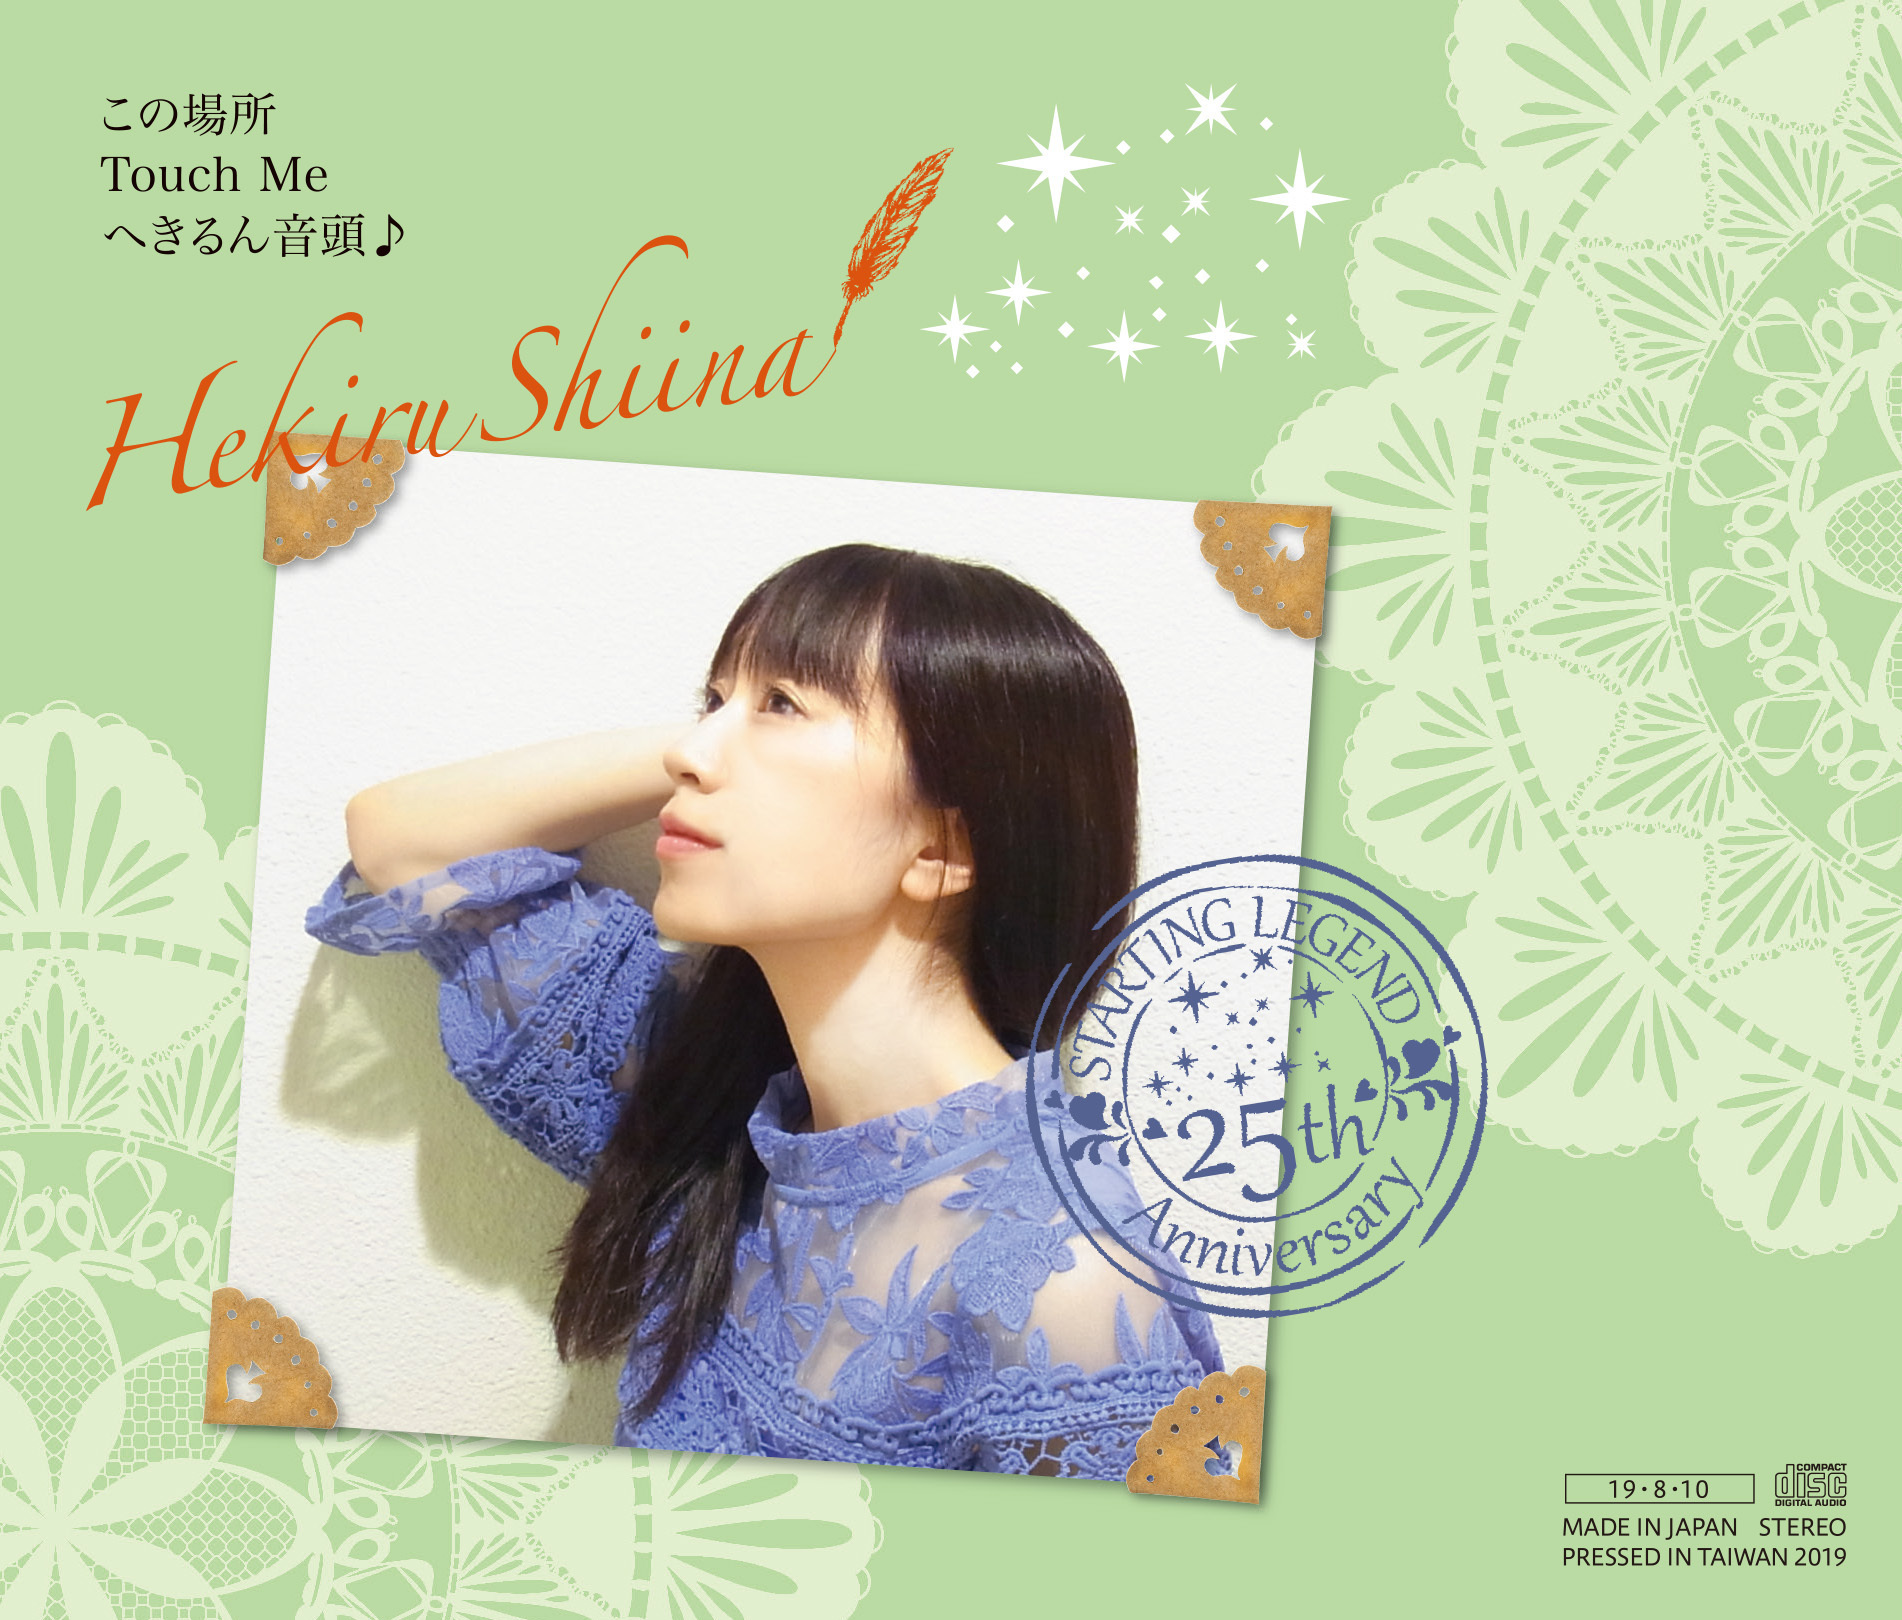 HEKIRU SHIINA STARTING LEGEND 25th Anniversary CD